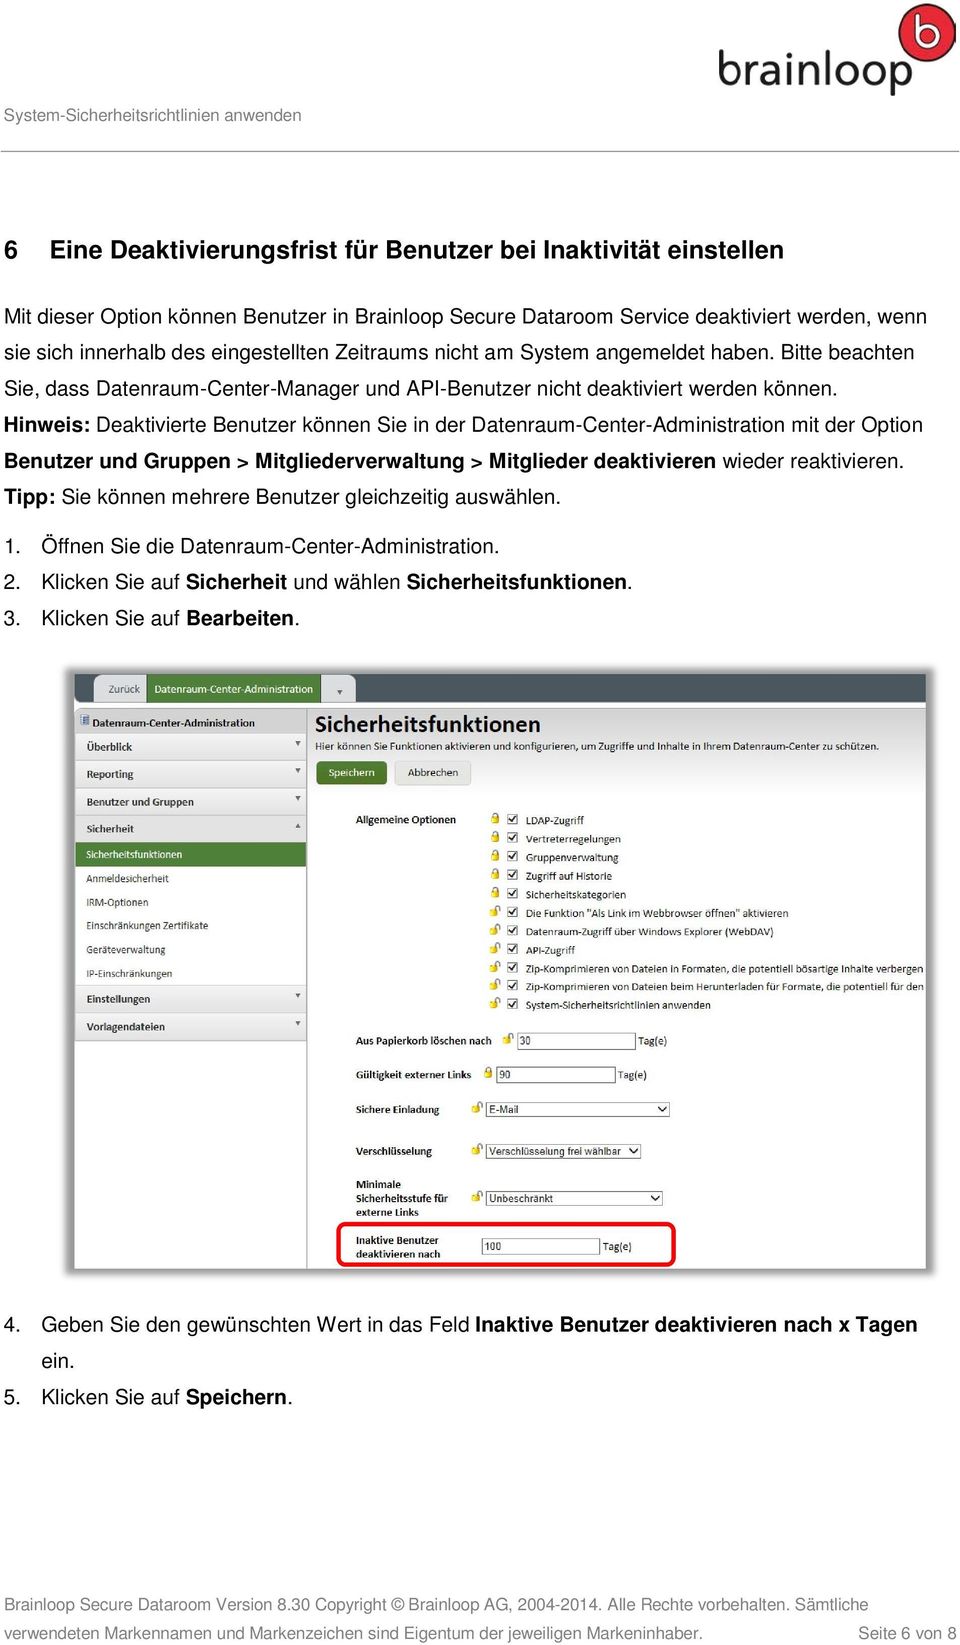 Hinweis: Deaktivierte Benutzer können Sie in der Datenraum-Center-Administration mit der Option Benutzer und Gruppen > Mitgliederverwaltung > Mitglieder deaktivieren wieder reaktivieren.